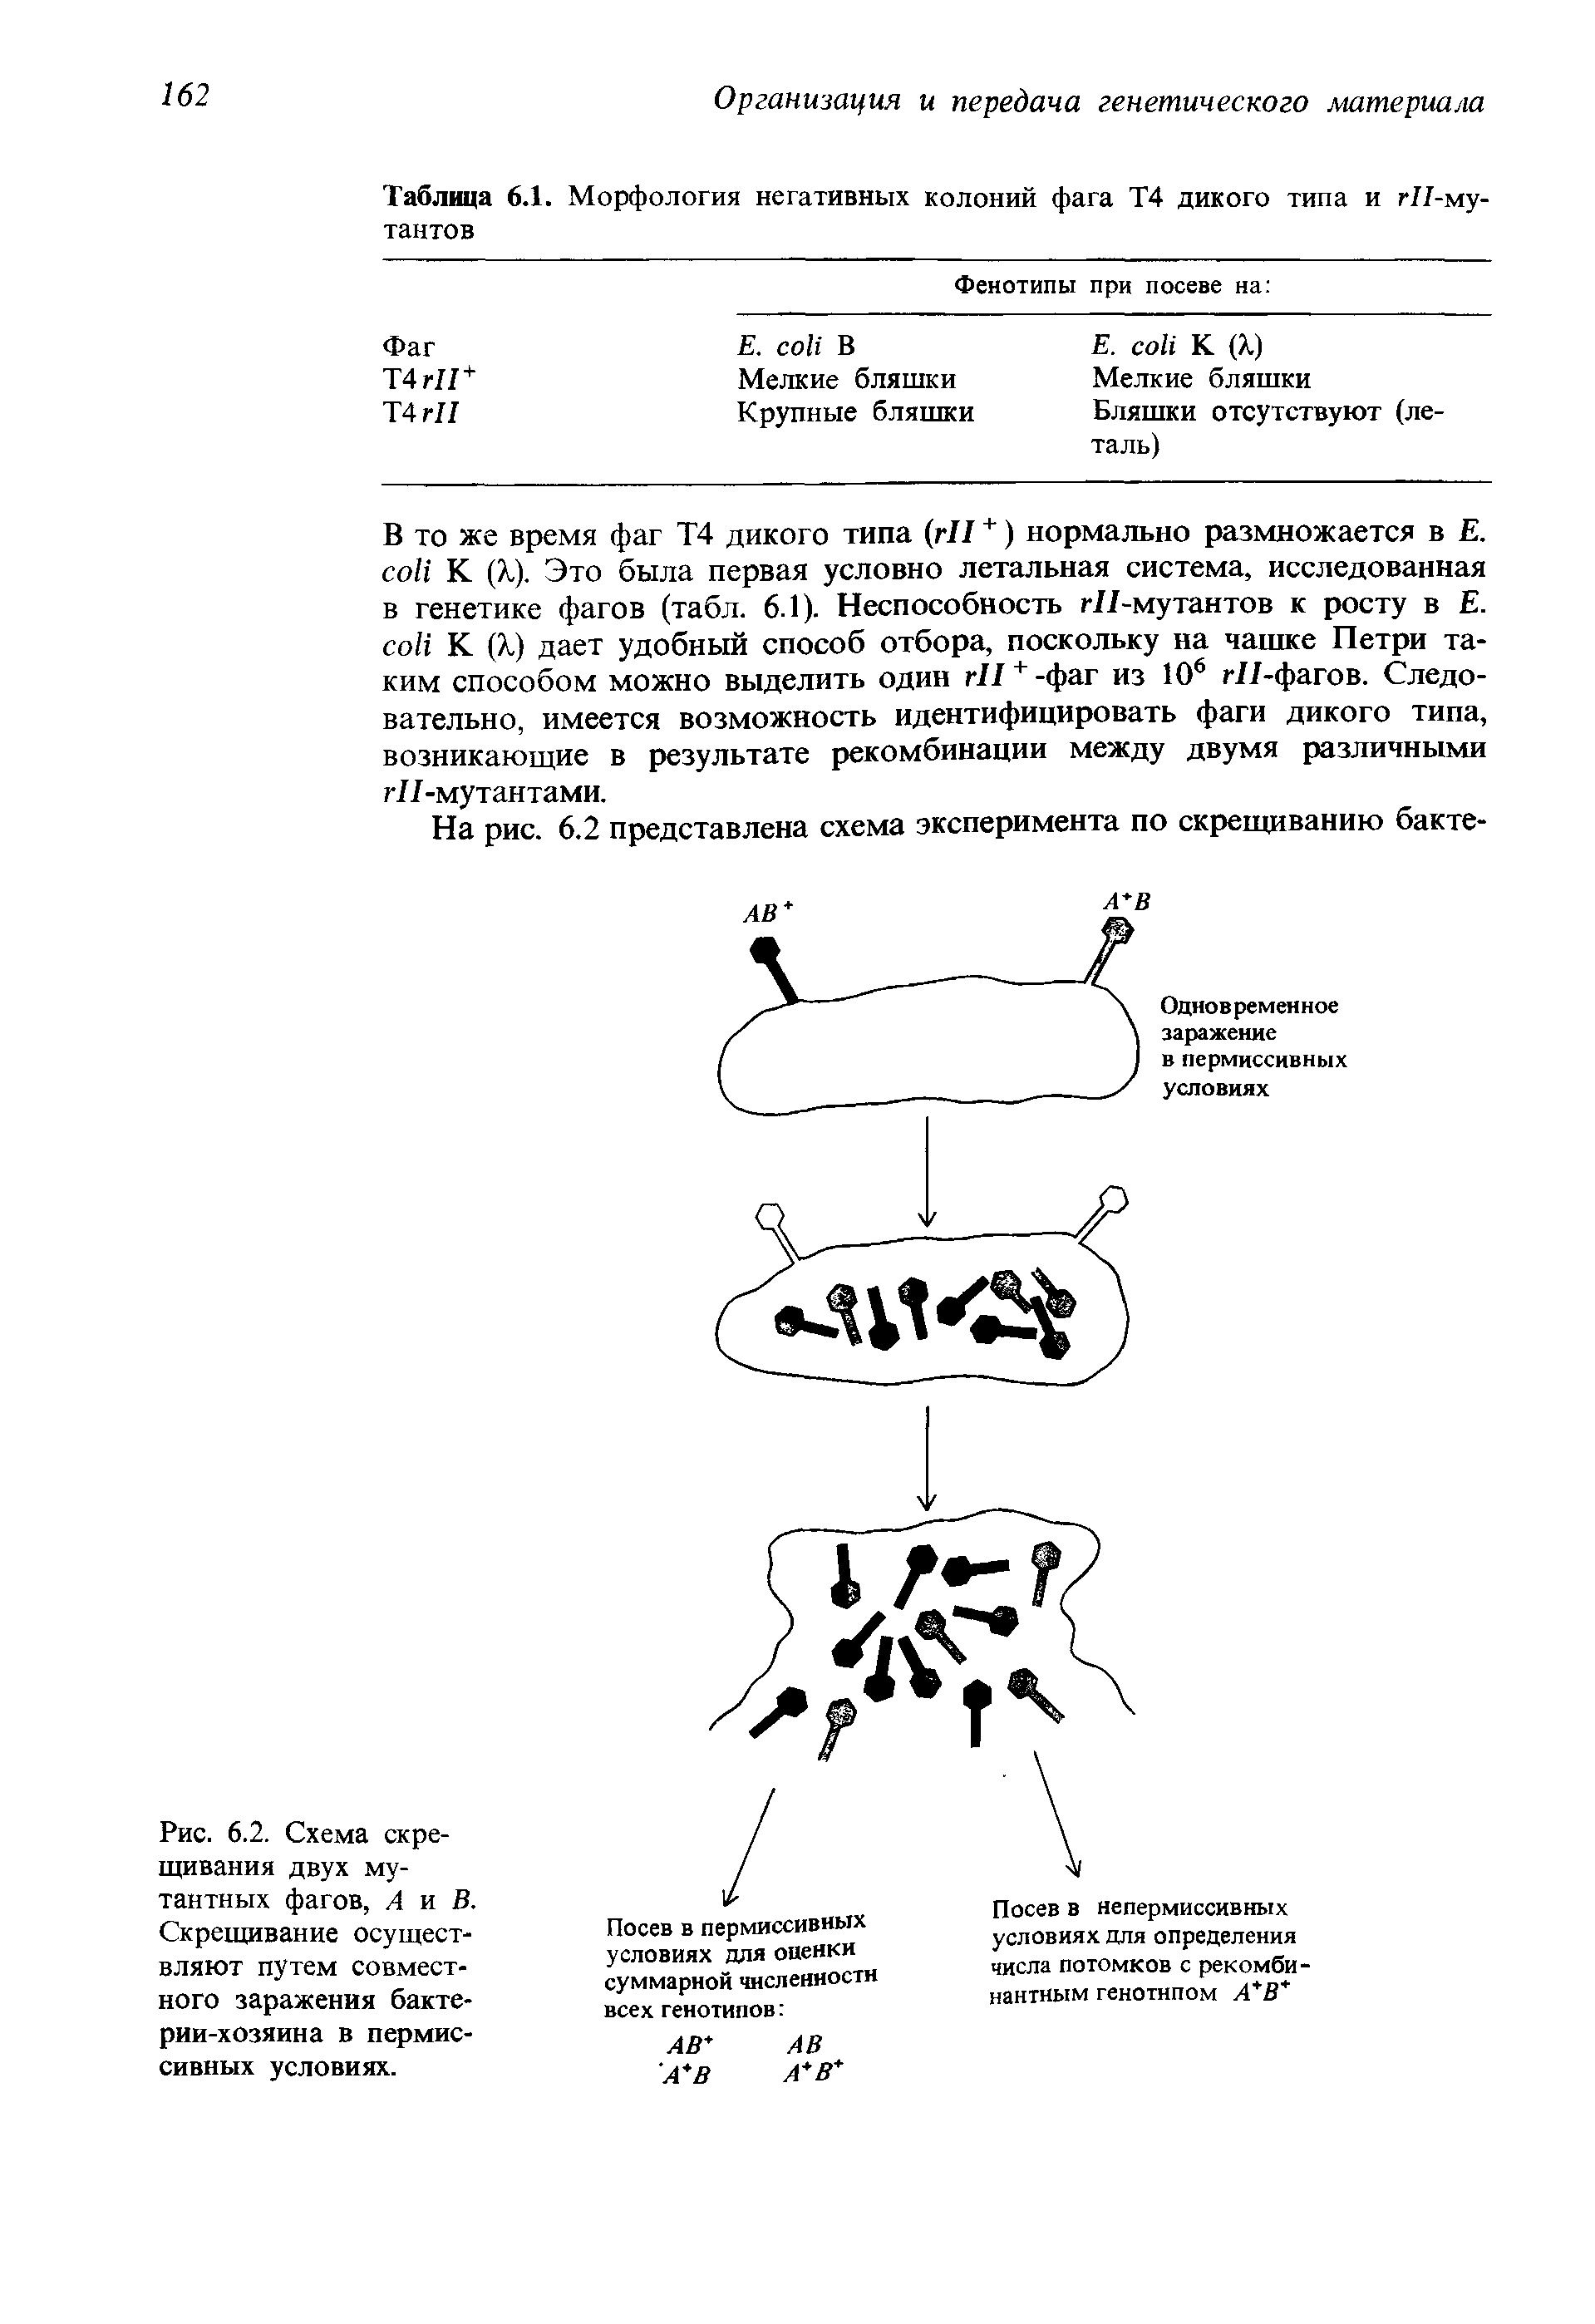 Рис. 6.2. Схема скрещивания двух мутантных фагов, А и В. Скрещивание осуществляют путем совместного заражения бактерии-хозяина в пермиссивных условиях.